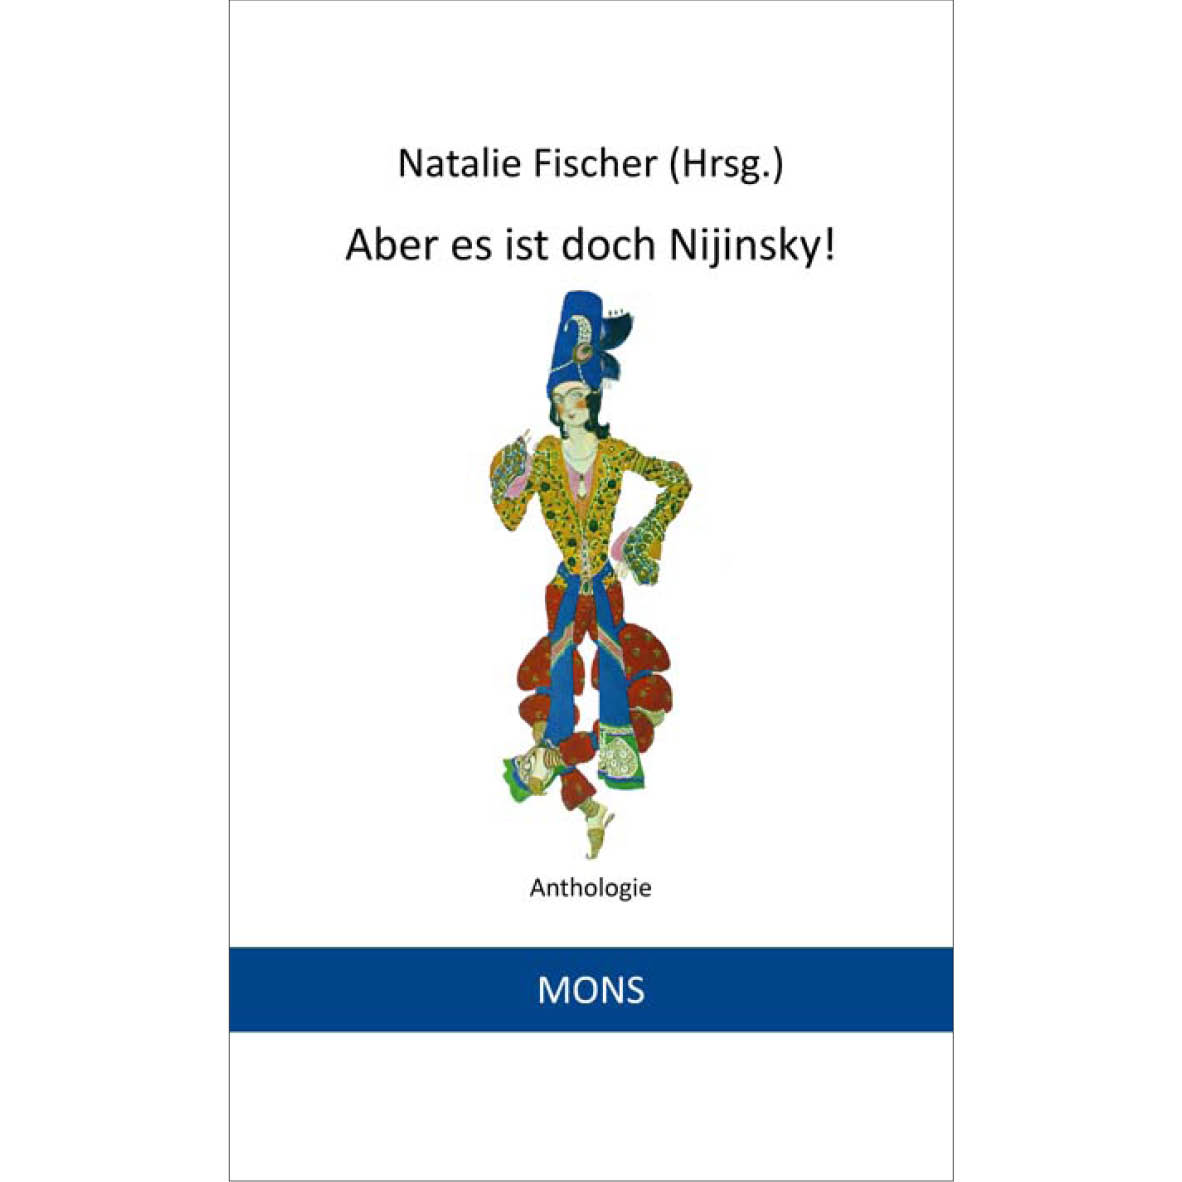 27.04.2018 in Dresden: Lesung aus „Aber es ist doch Nijinsky!“ im Kulturhaus Loschwitz zum Welttag des Tanzes